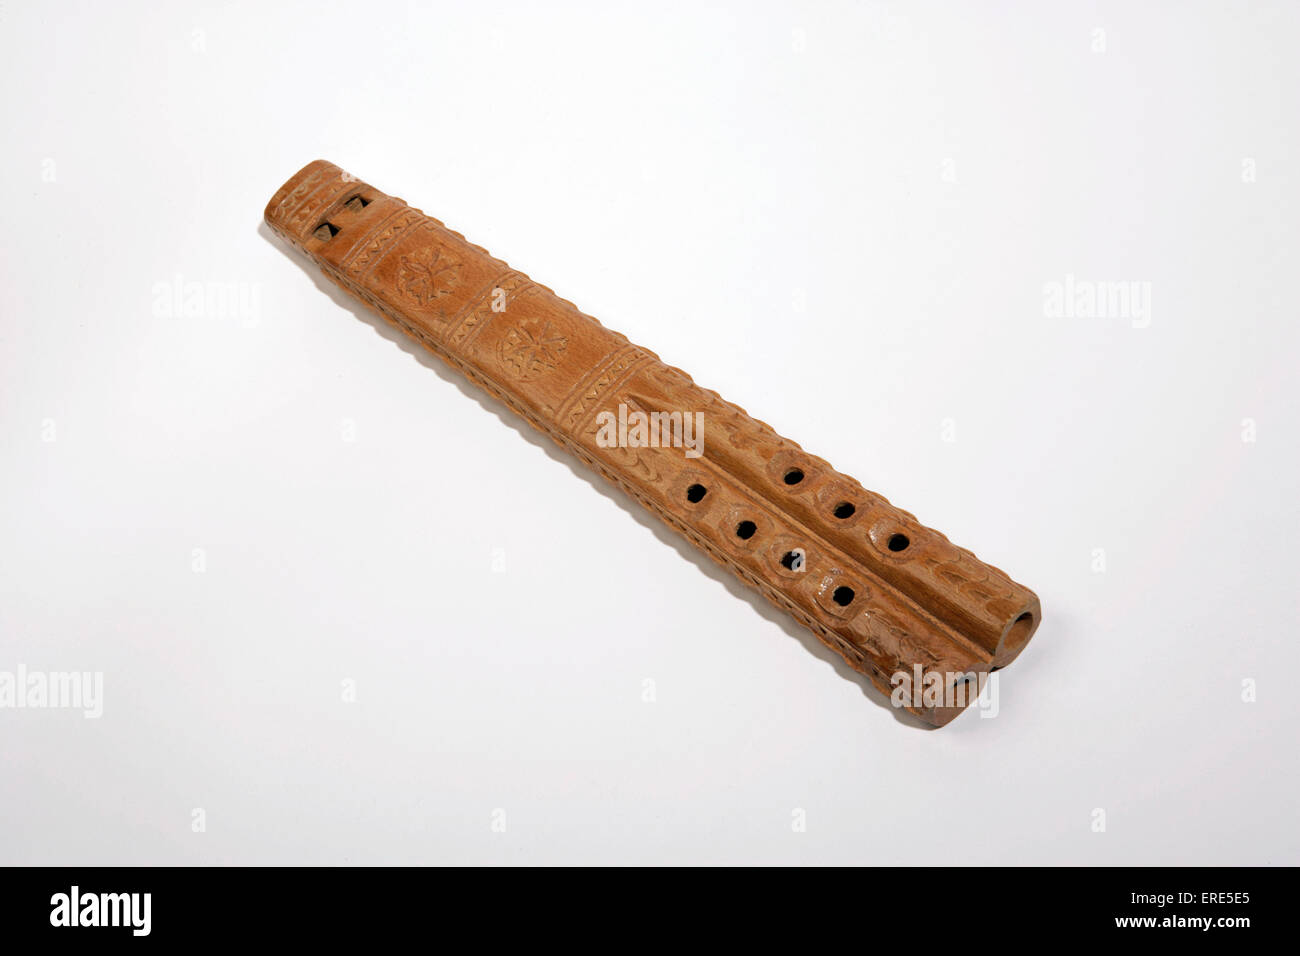 Frula, eslavos doble flauta. También se conoce como Dvojnica o Dvoynice. Tallada en una sola pieza de madera, un tubo es el zumbido del tubo. Foto de stock